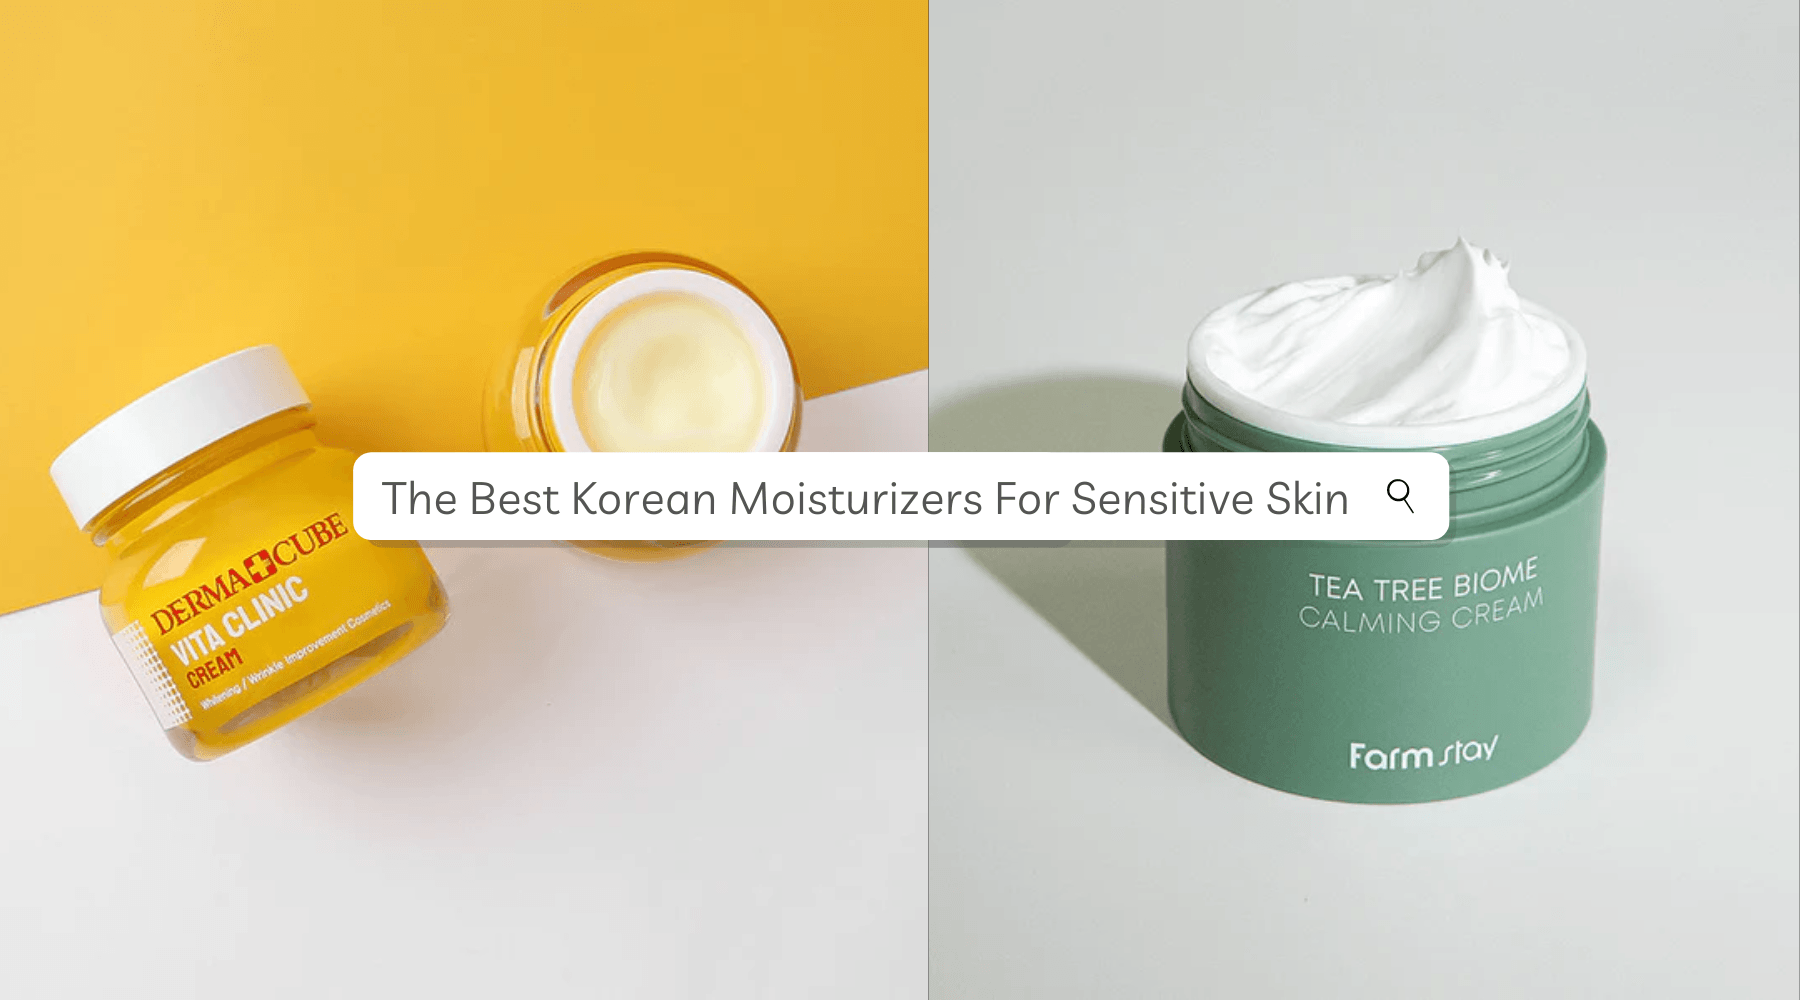 The 5 Best Korean Moisturizers For Sensitive Skin - UShops